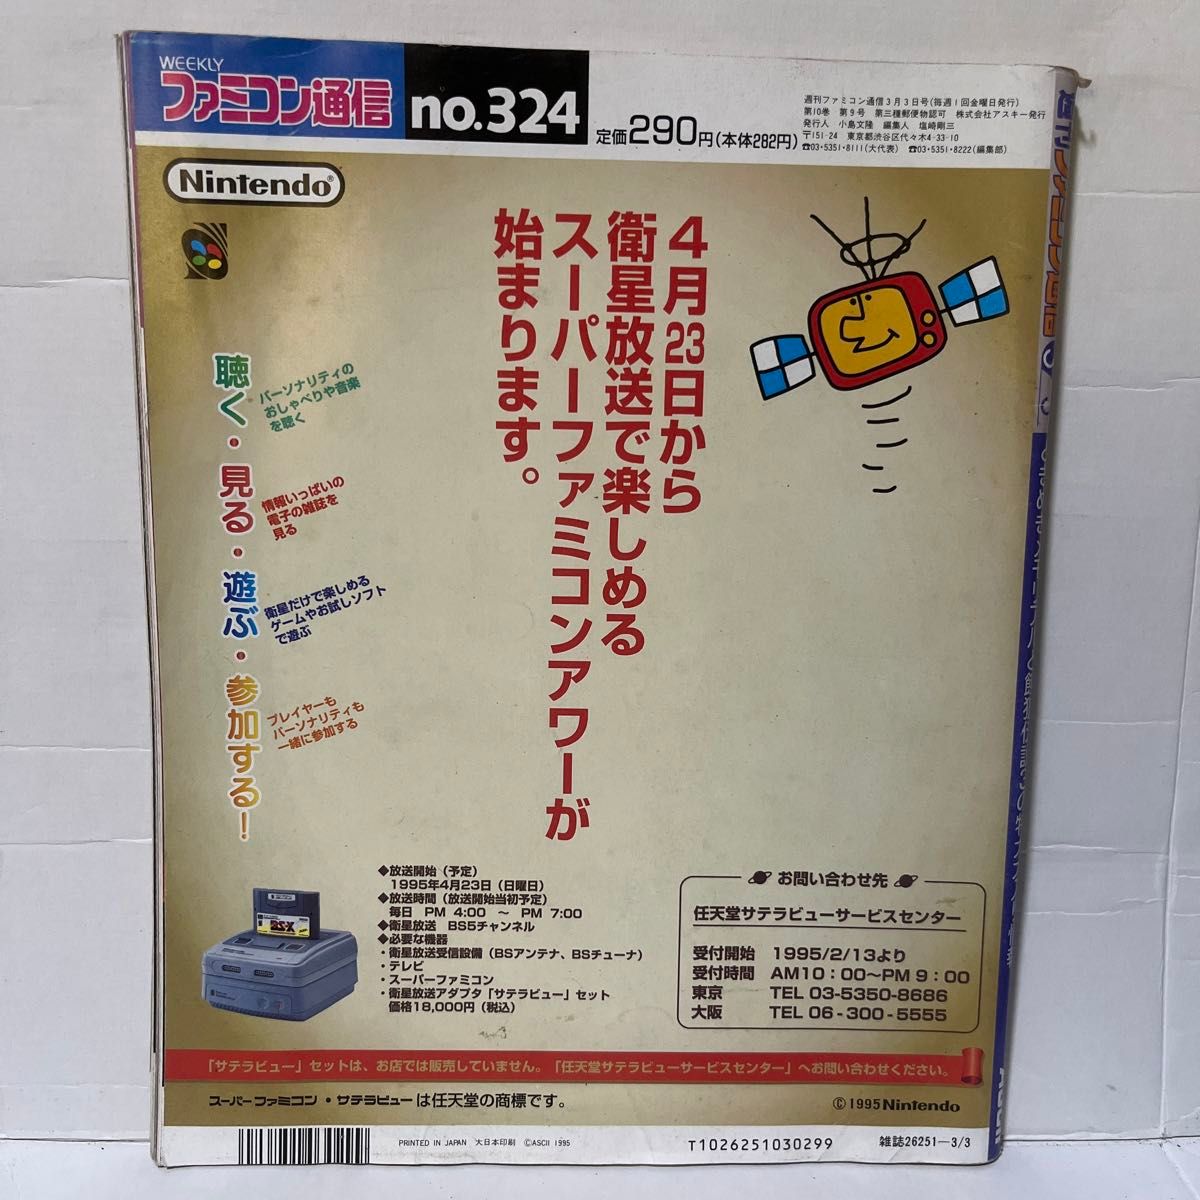 【レア】81.WEEKLY ファミコン通信 1995 3.3 no.324